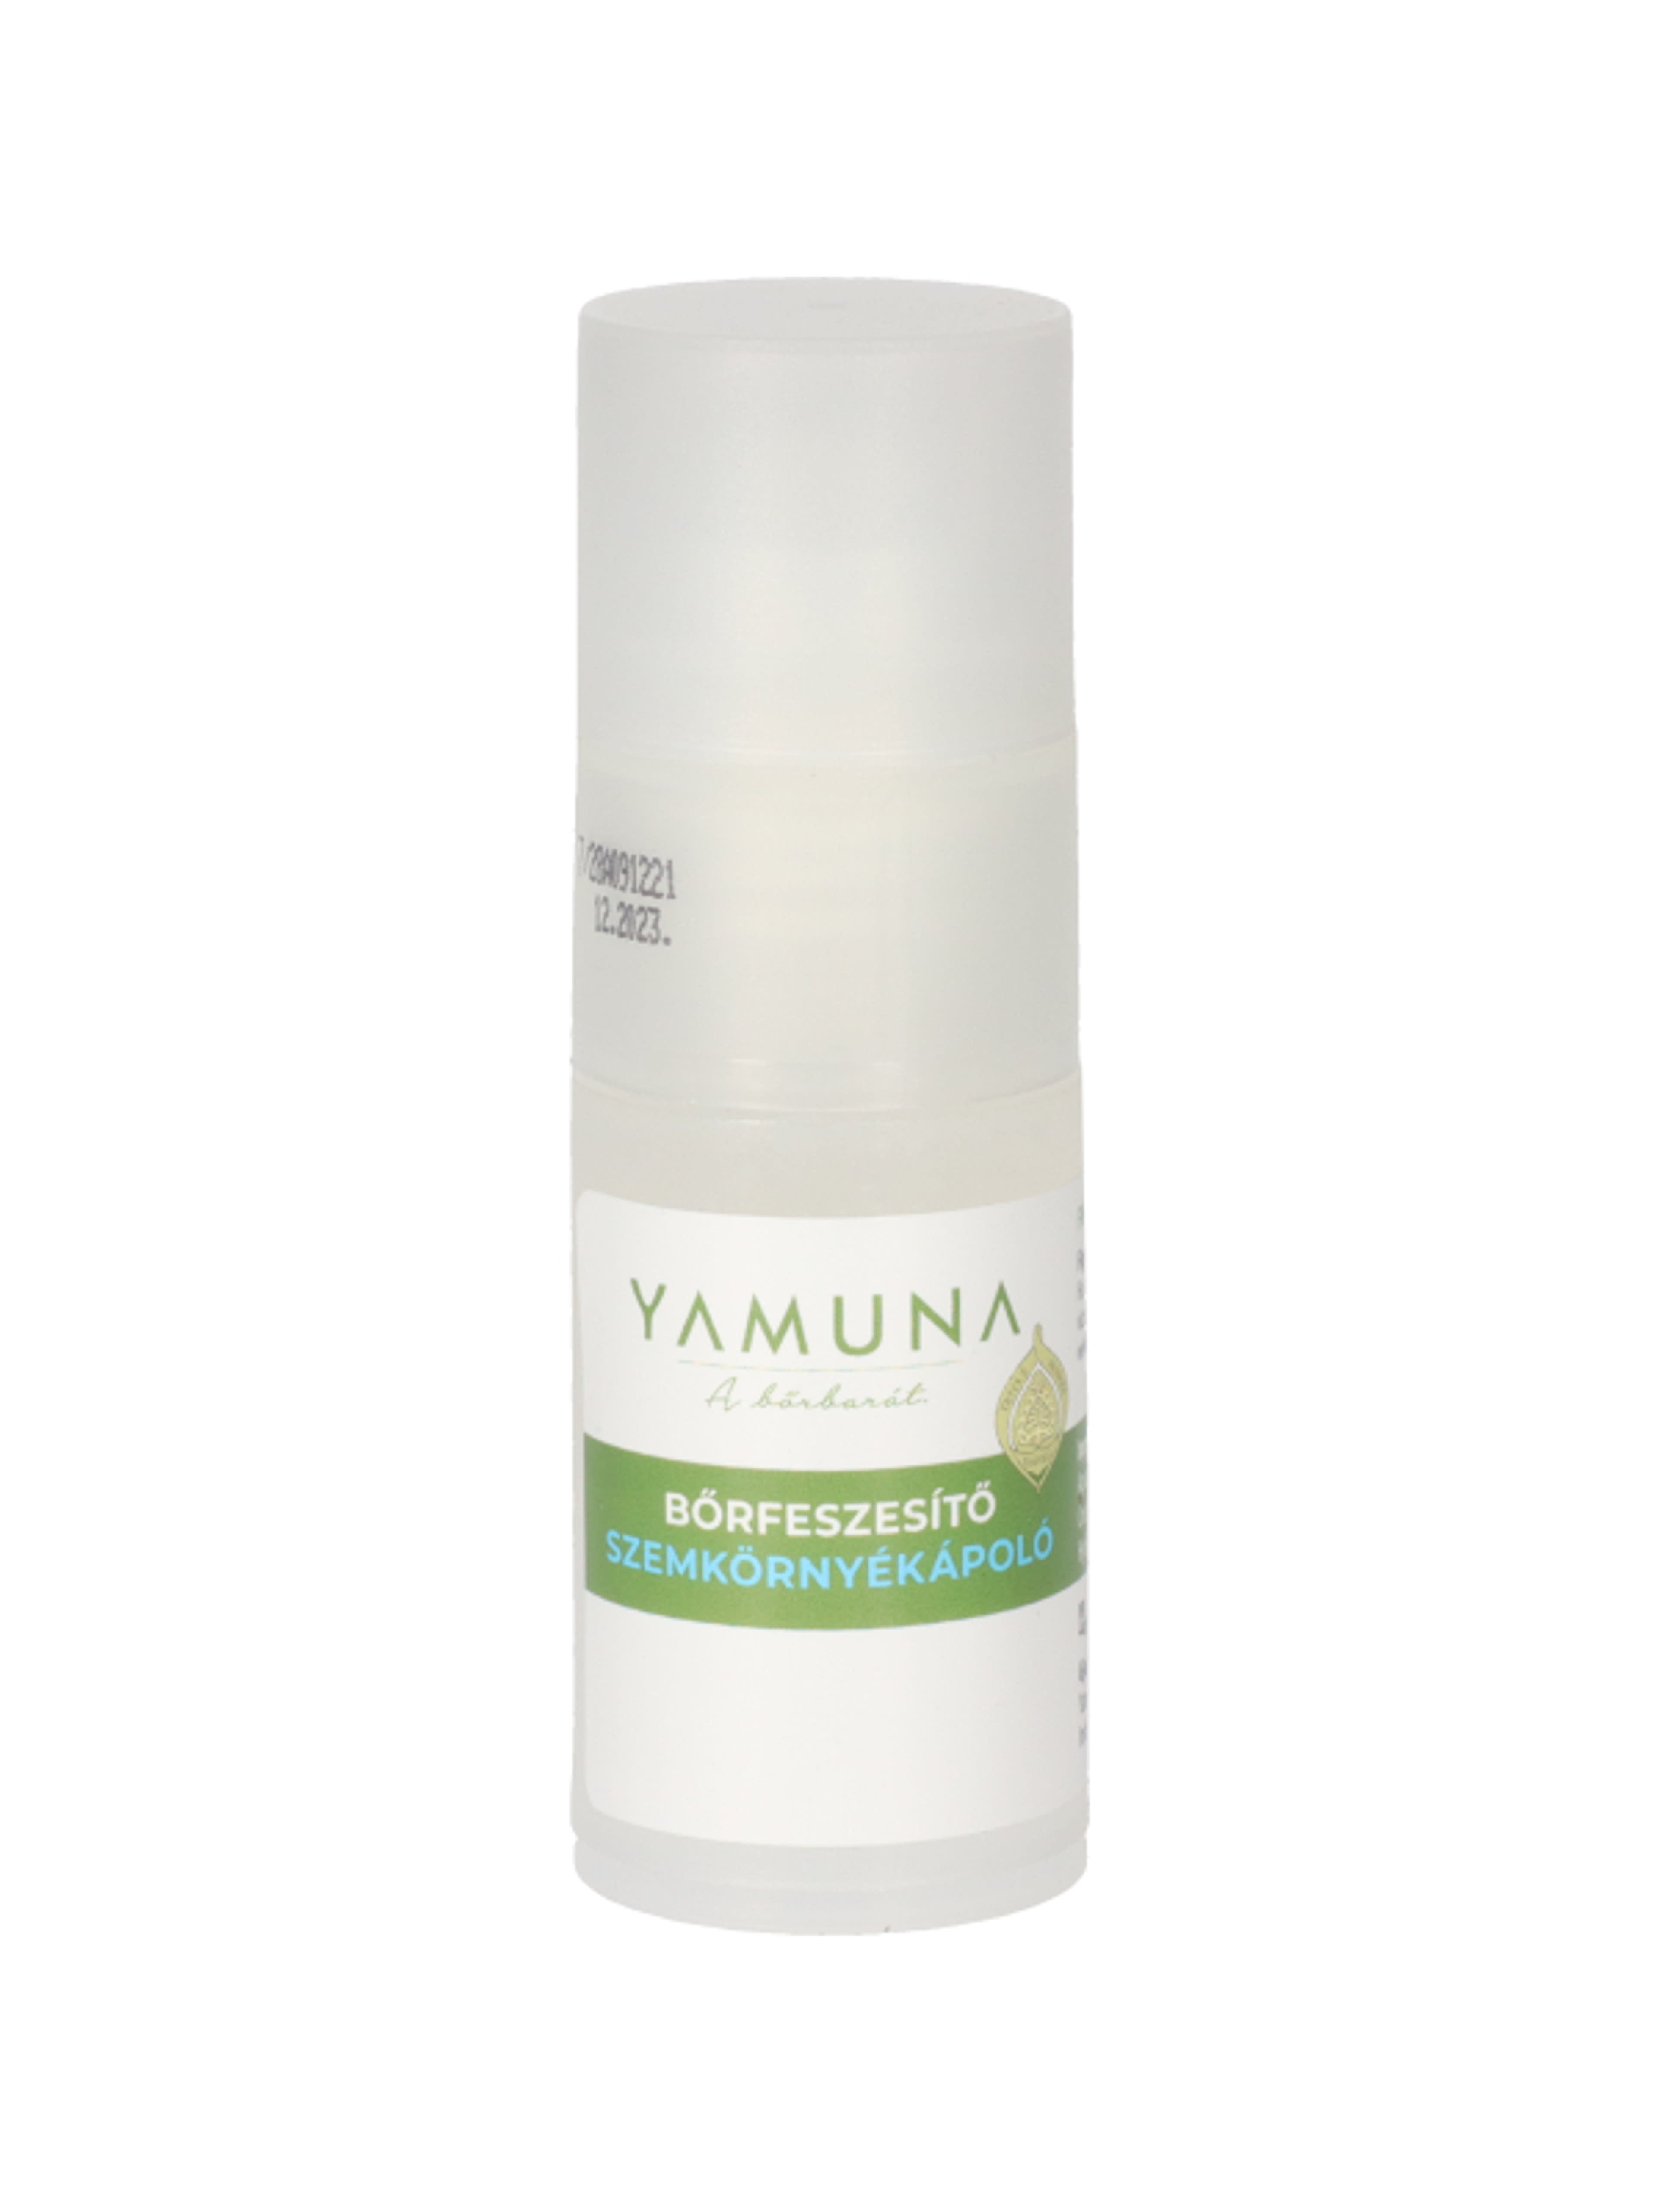 Yamuna bőrfeszesítő szemkörnyékápoló - 15 ml